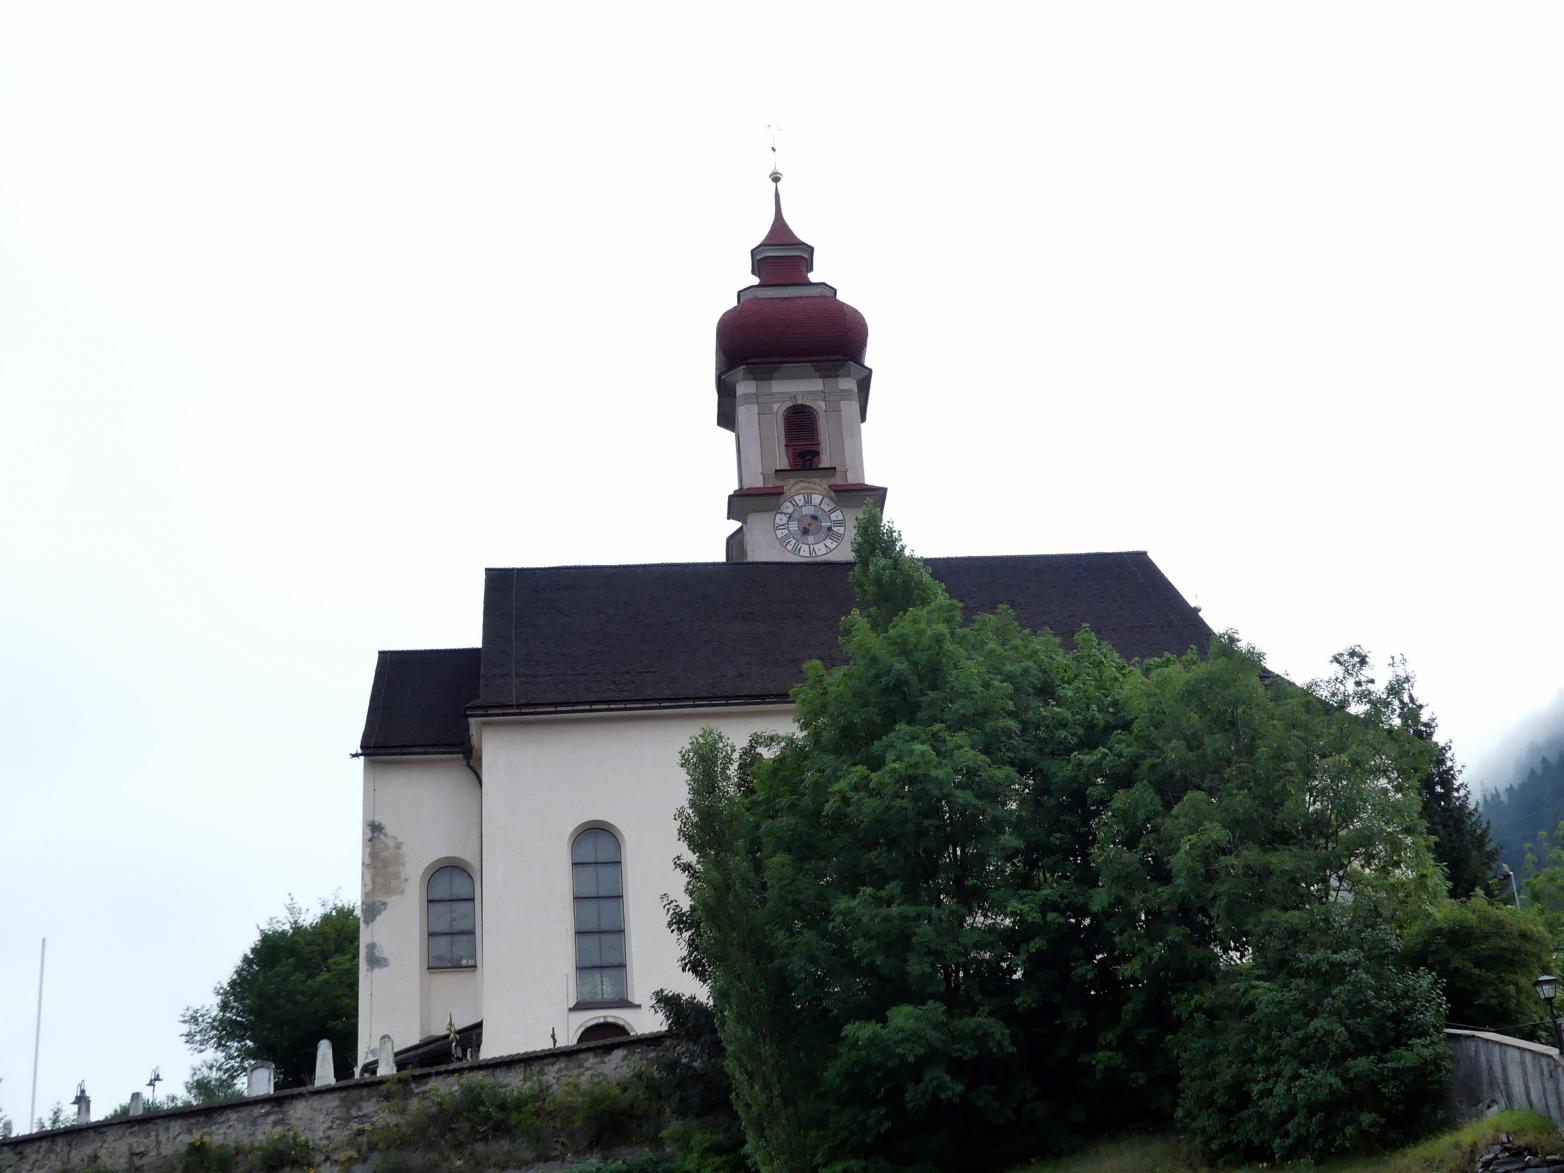 Gossensaß (Südtirol), Pfarrkirche Maria Unbefleckte Empfängnis, Bild 1/9